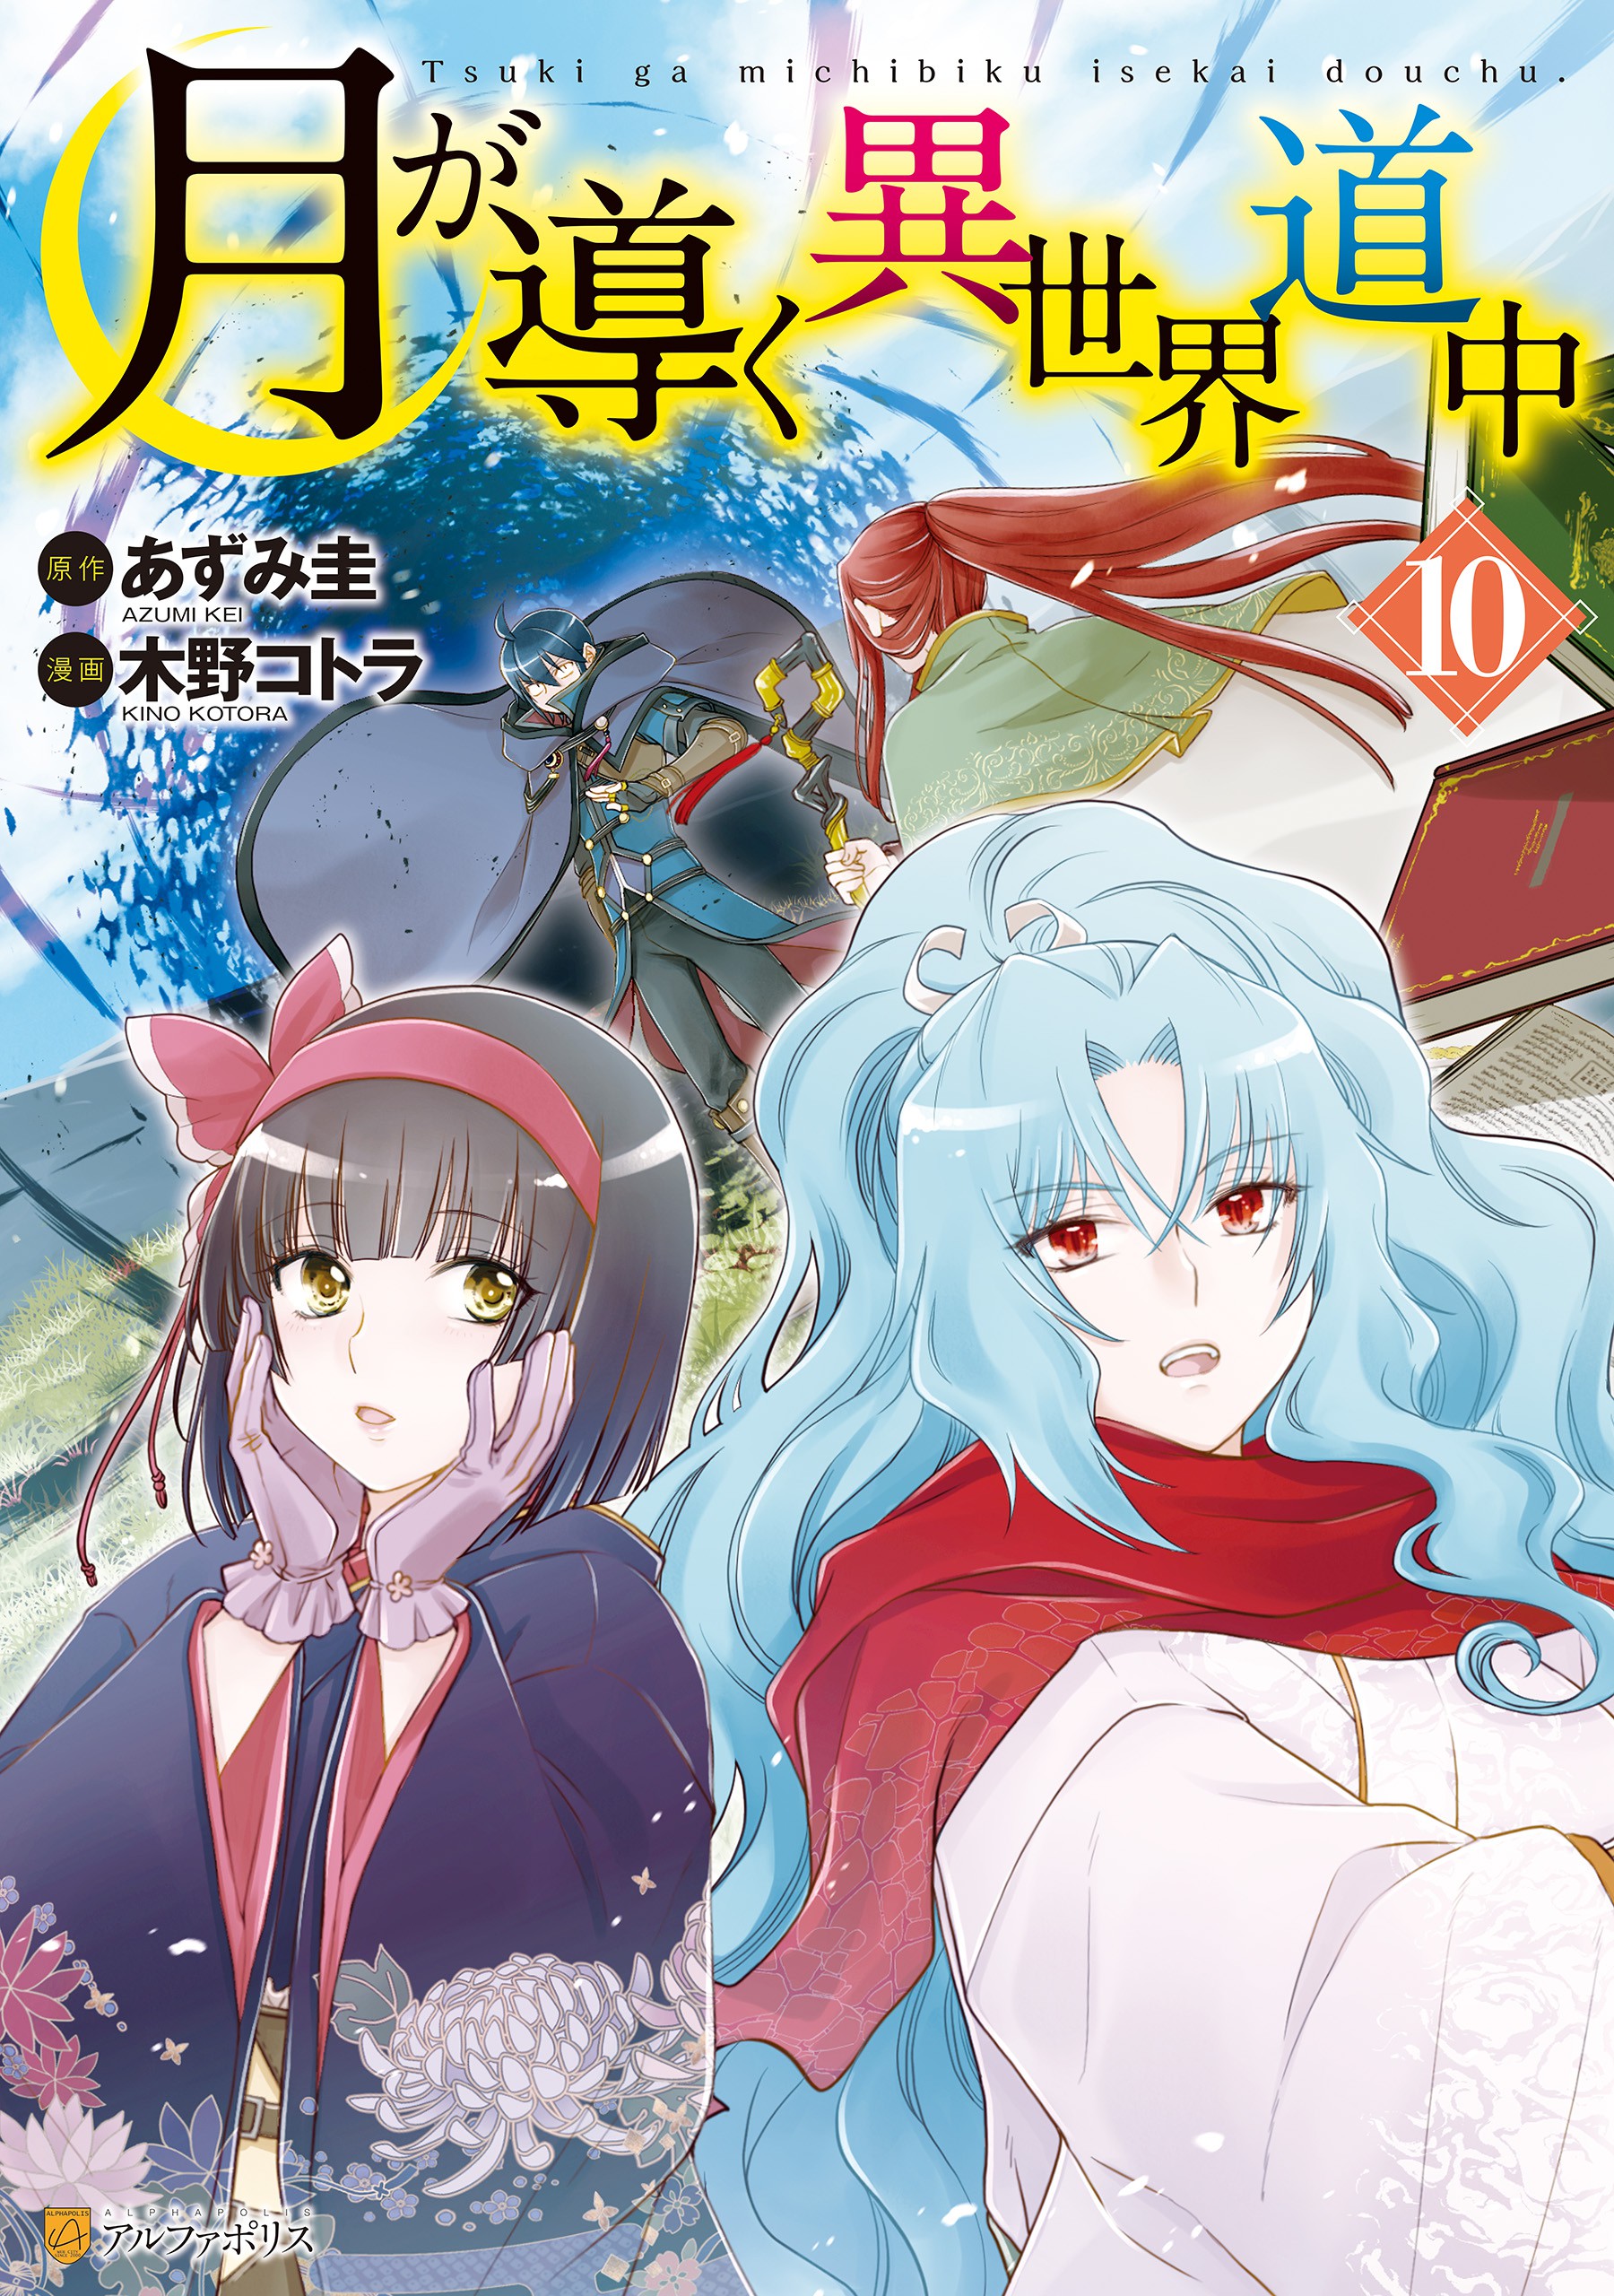 Tsukimichi：Moonlit Fantasy: Tsuki Ga Michibiku Isekai Douchuu Vol